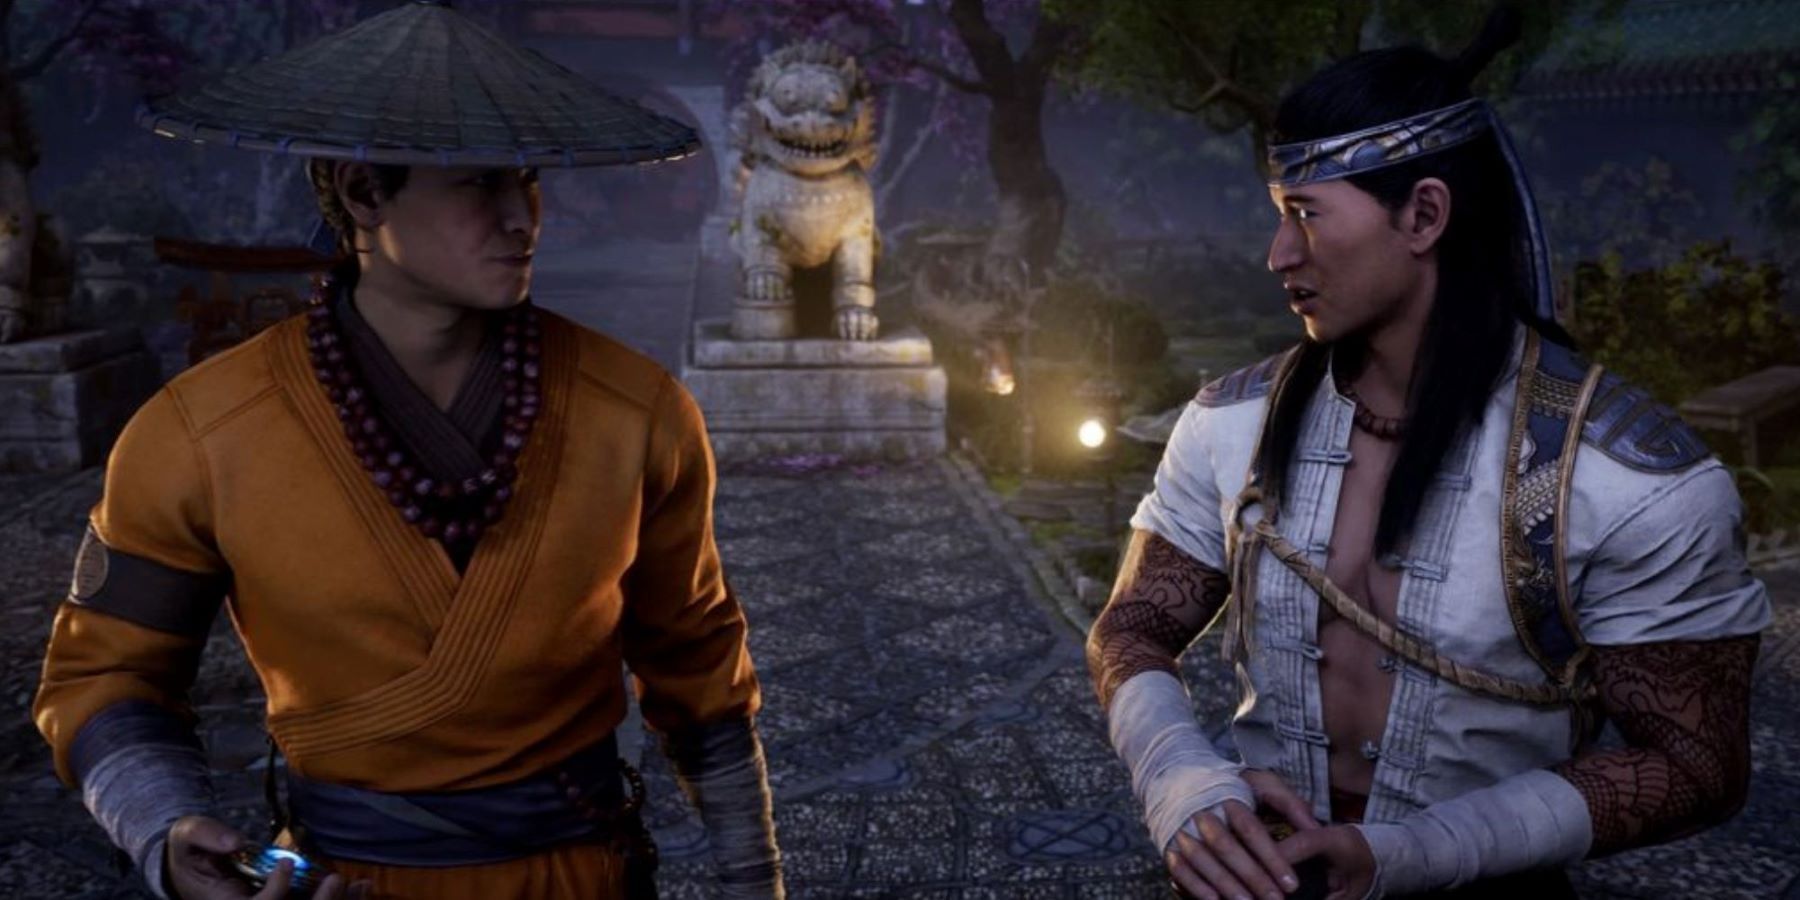 mortal kombat 1 story cutscene showing liu kang talking to raiden